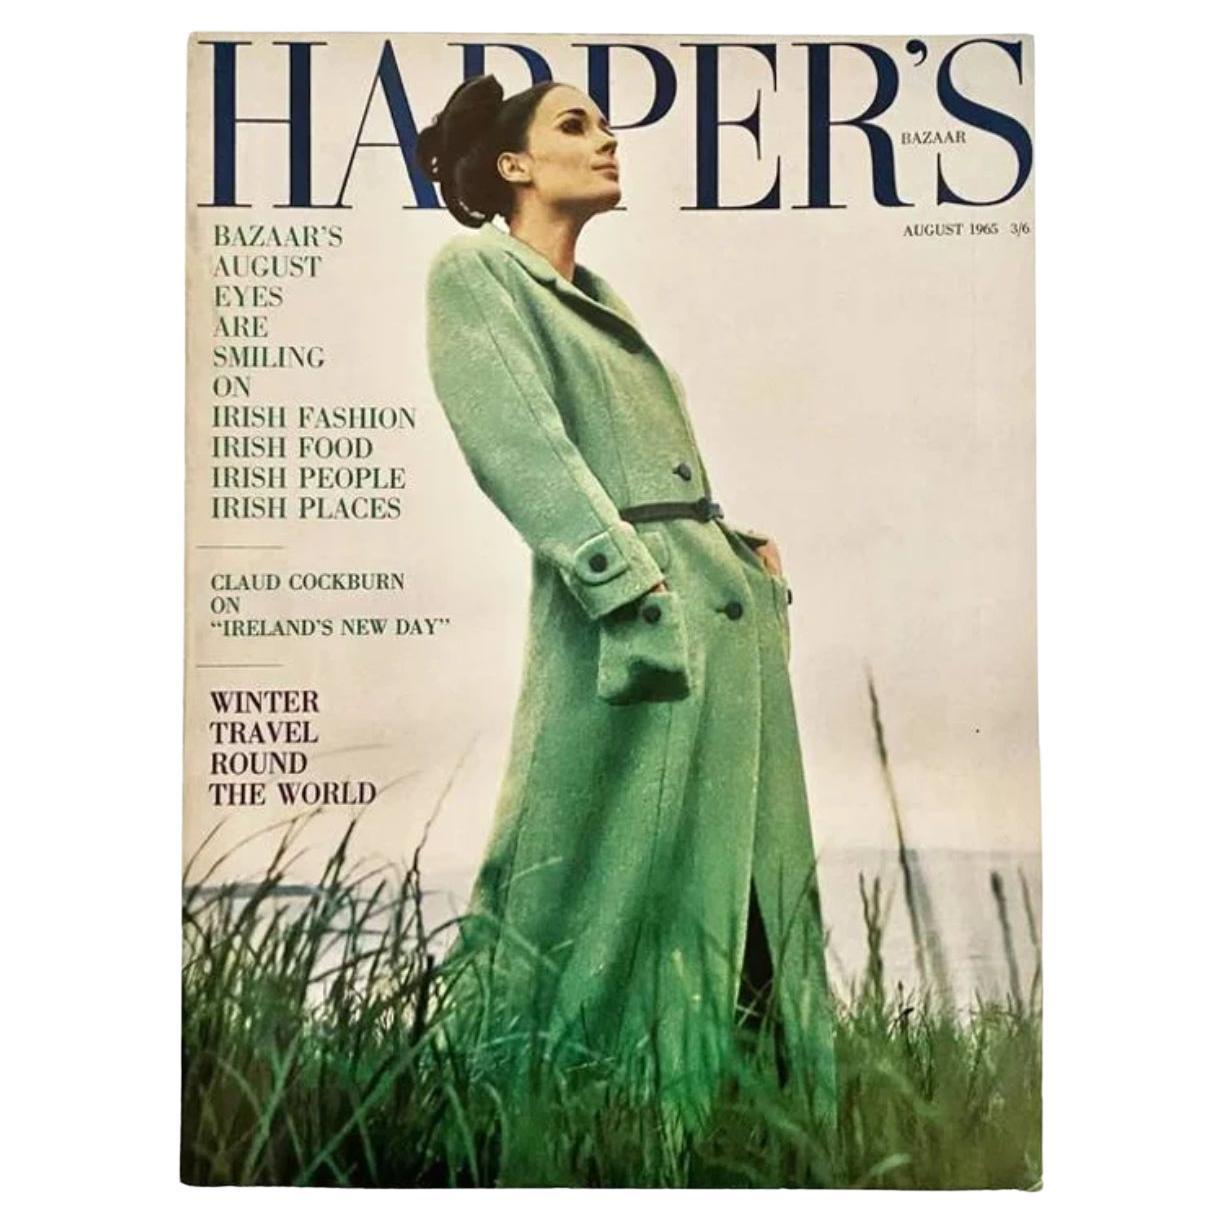 1965 Harper's Bazaar - Cover by David Montgomery